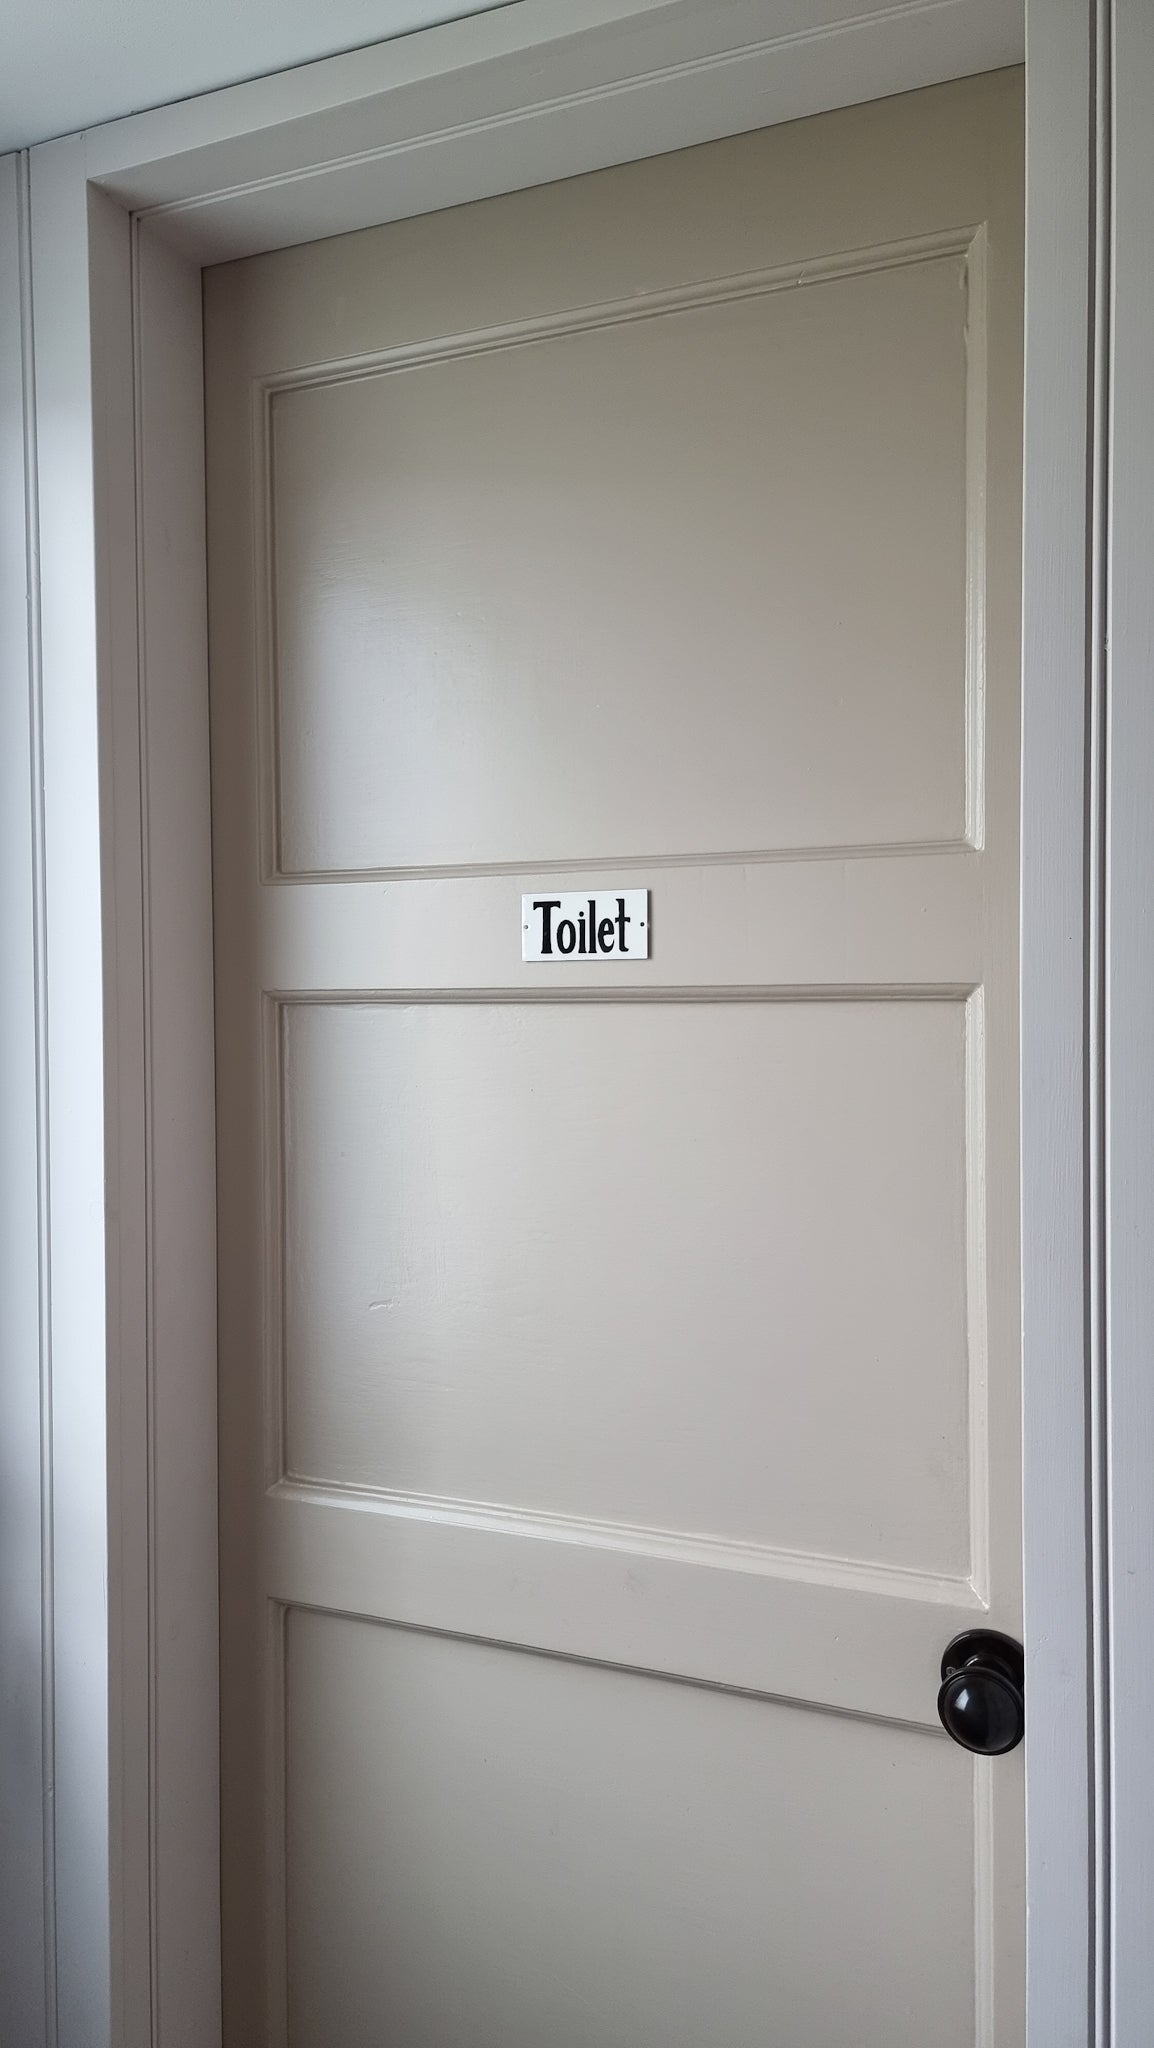 Toilet Metal Door Sign